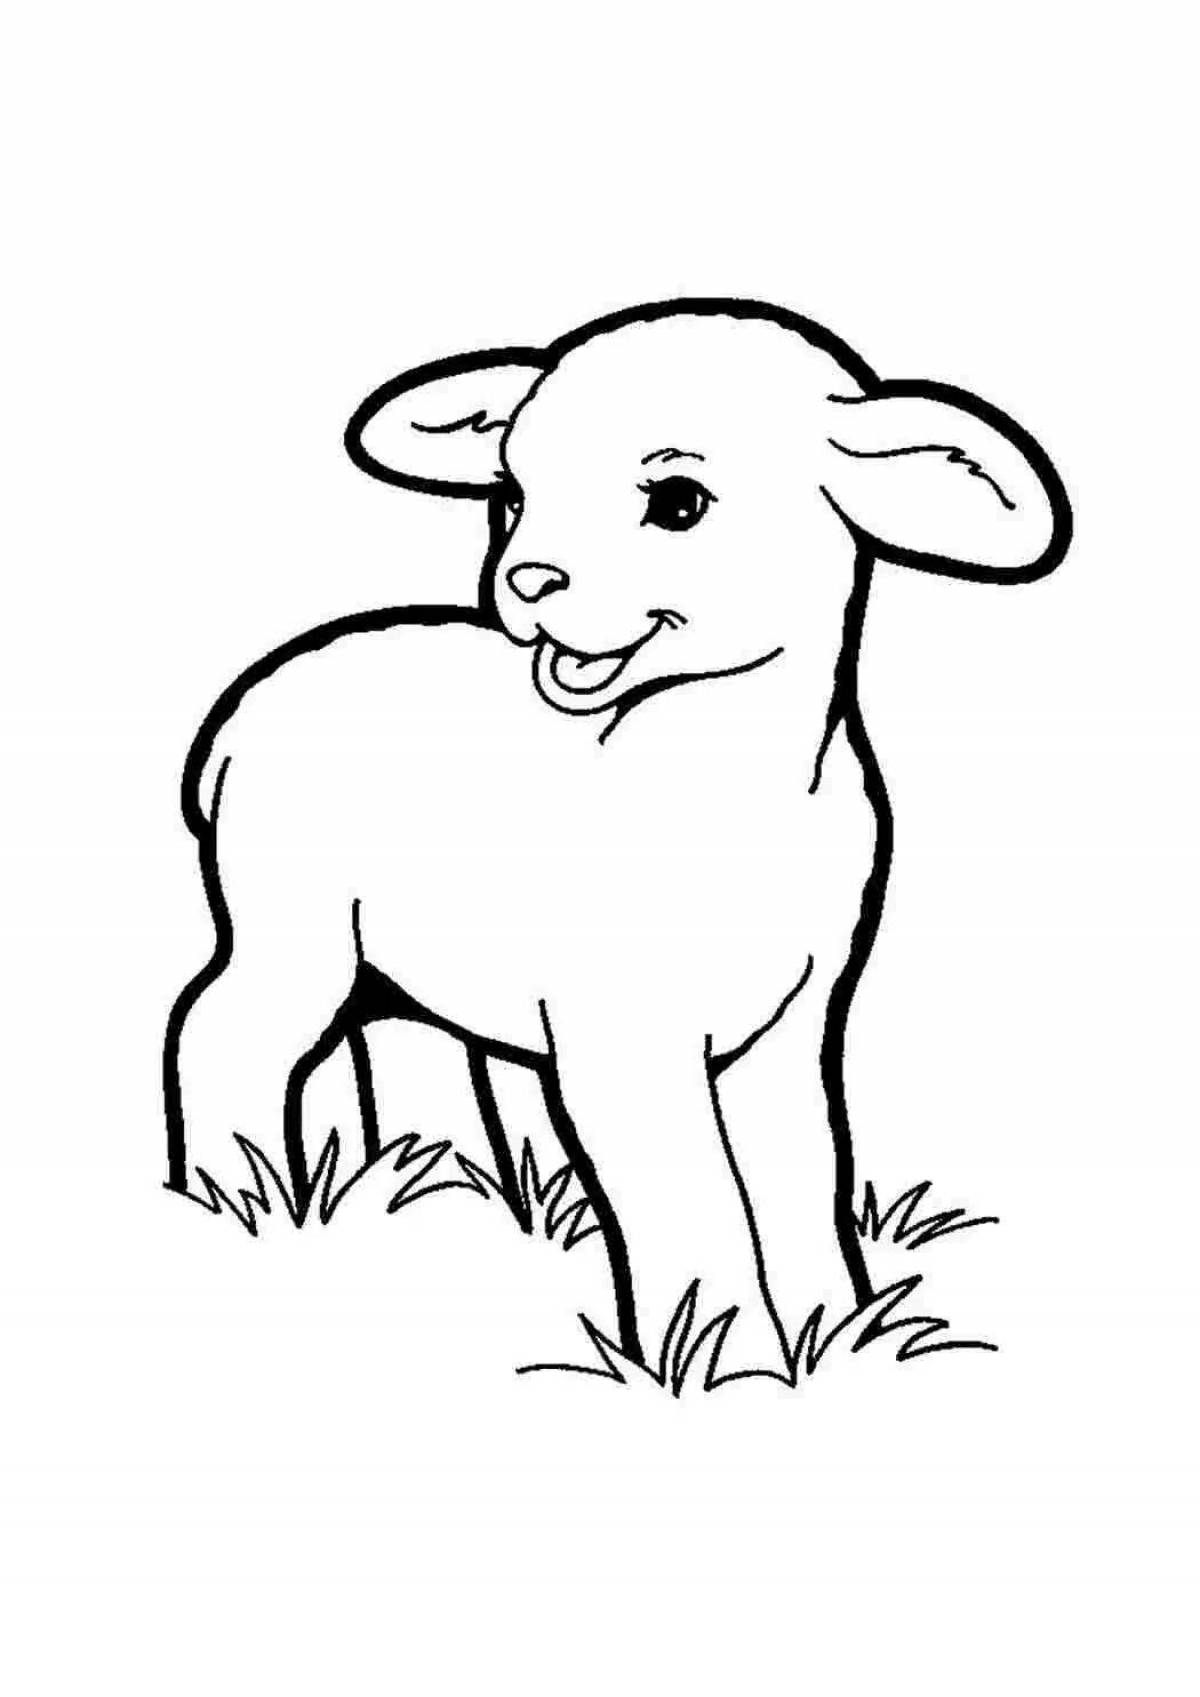 Calm lamb coloring